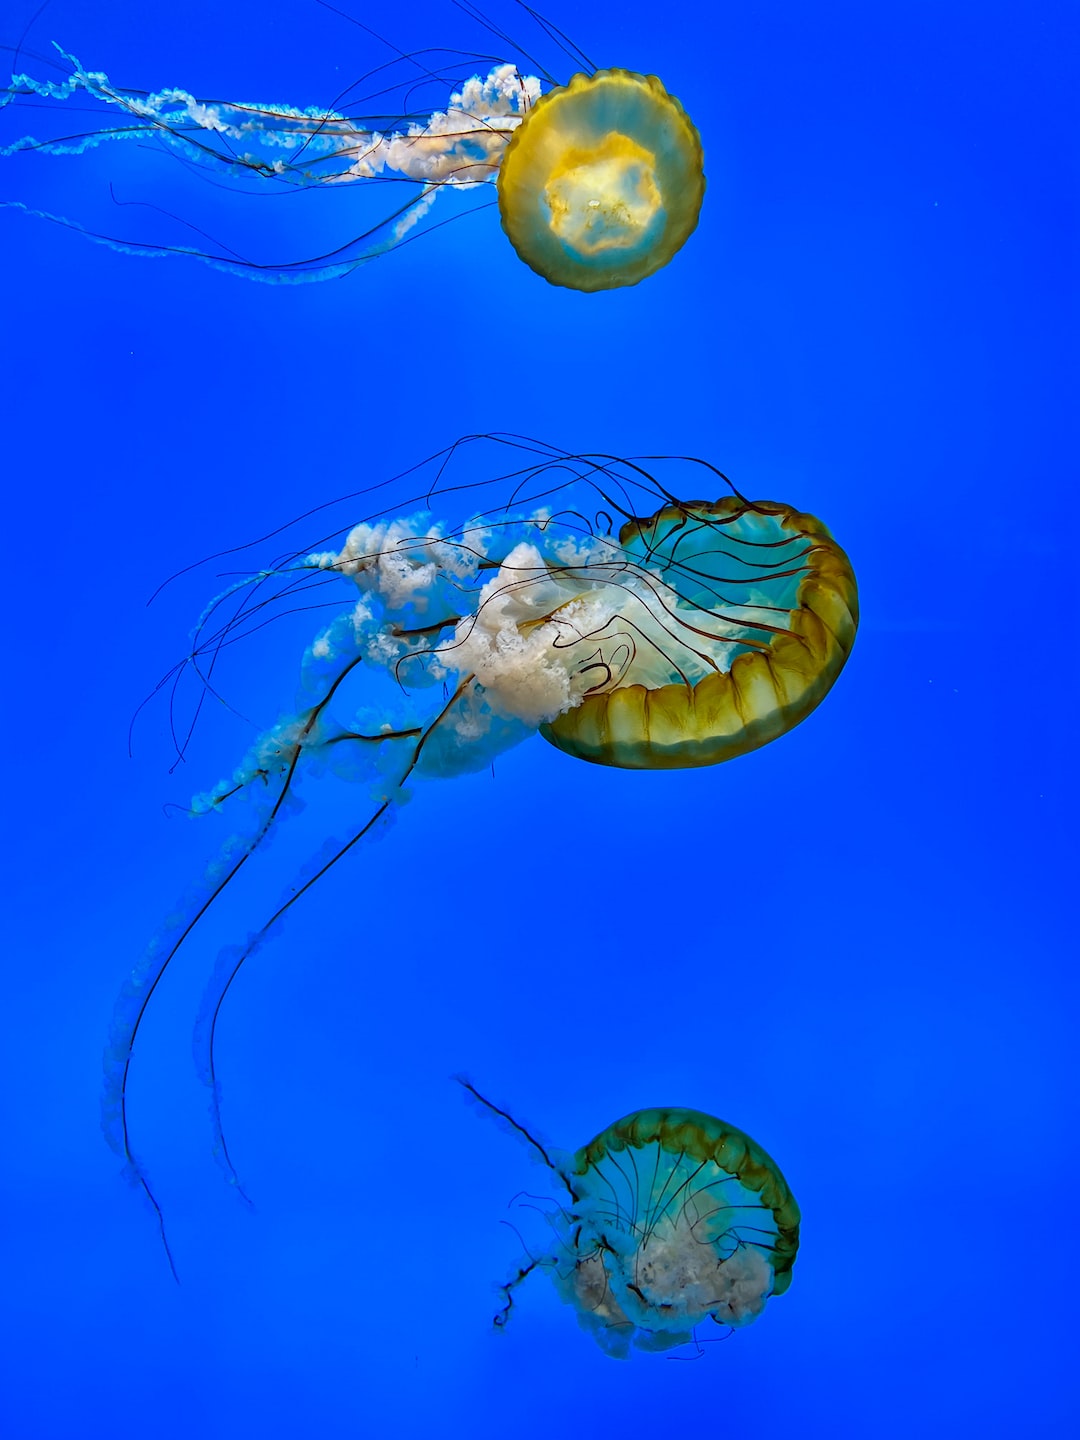 25 wichtige Fragen zu Hecht Fürs Aquarium